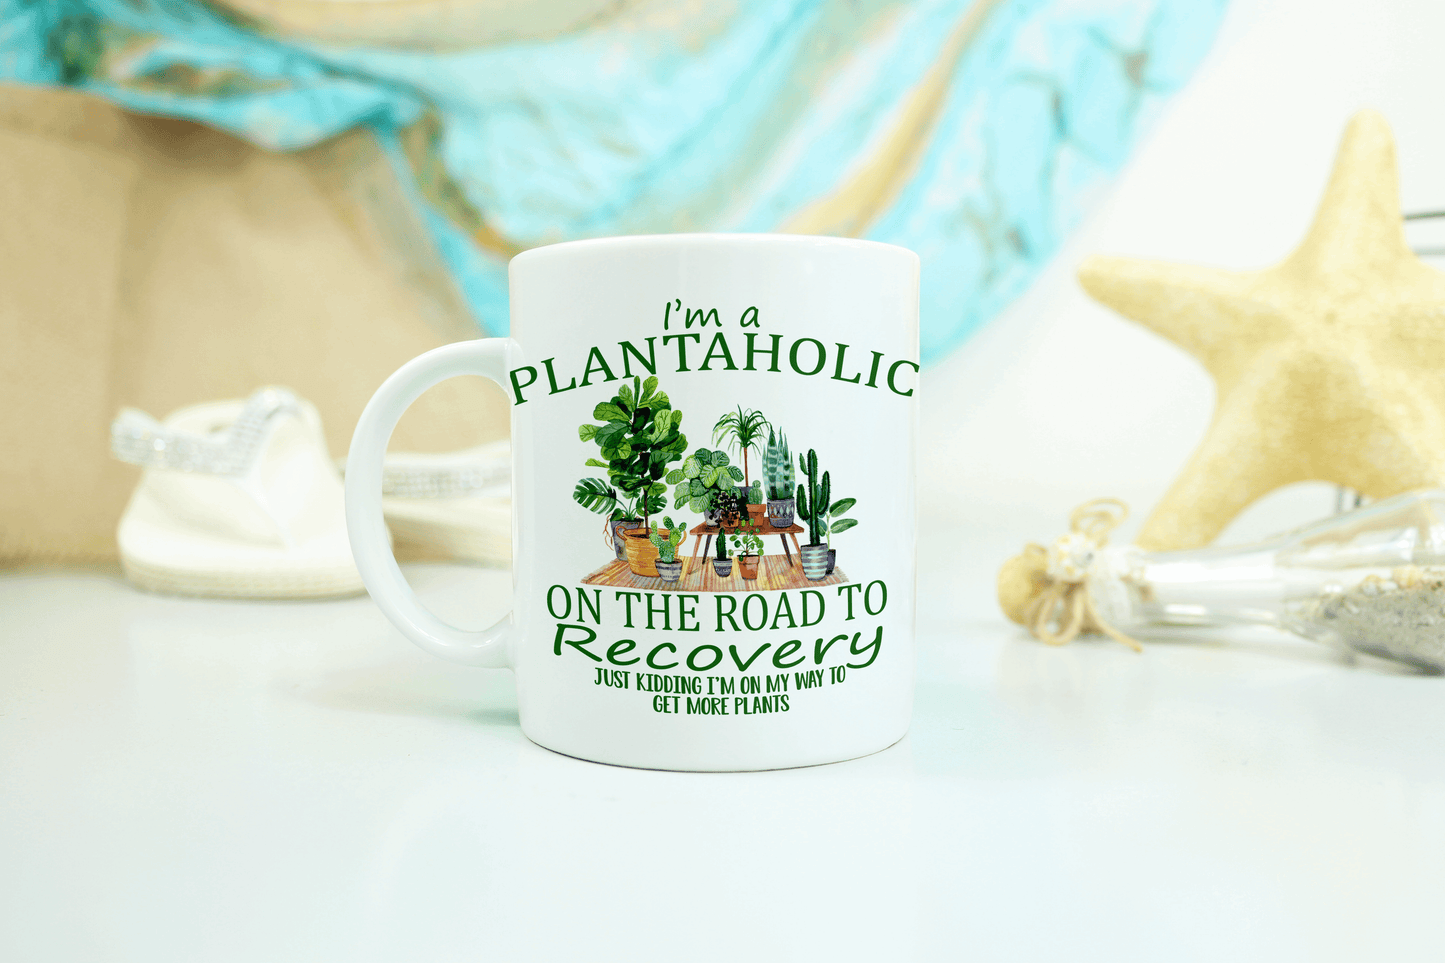  I'm a Plantaholic Coffee Mug by Free Spirit Accessories sold by Free Spirit Accessories